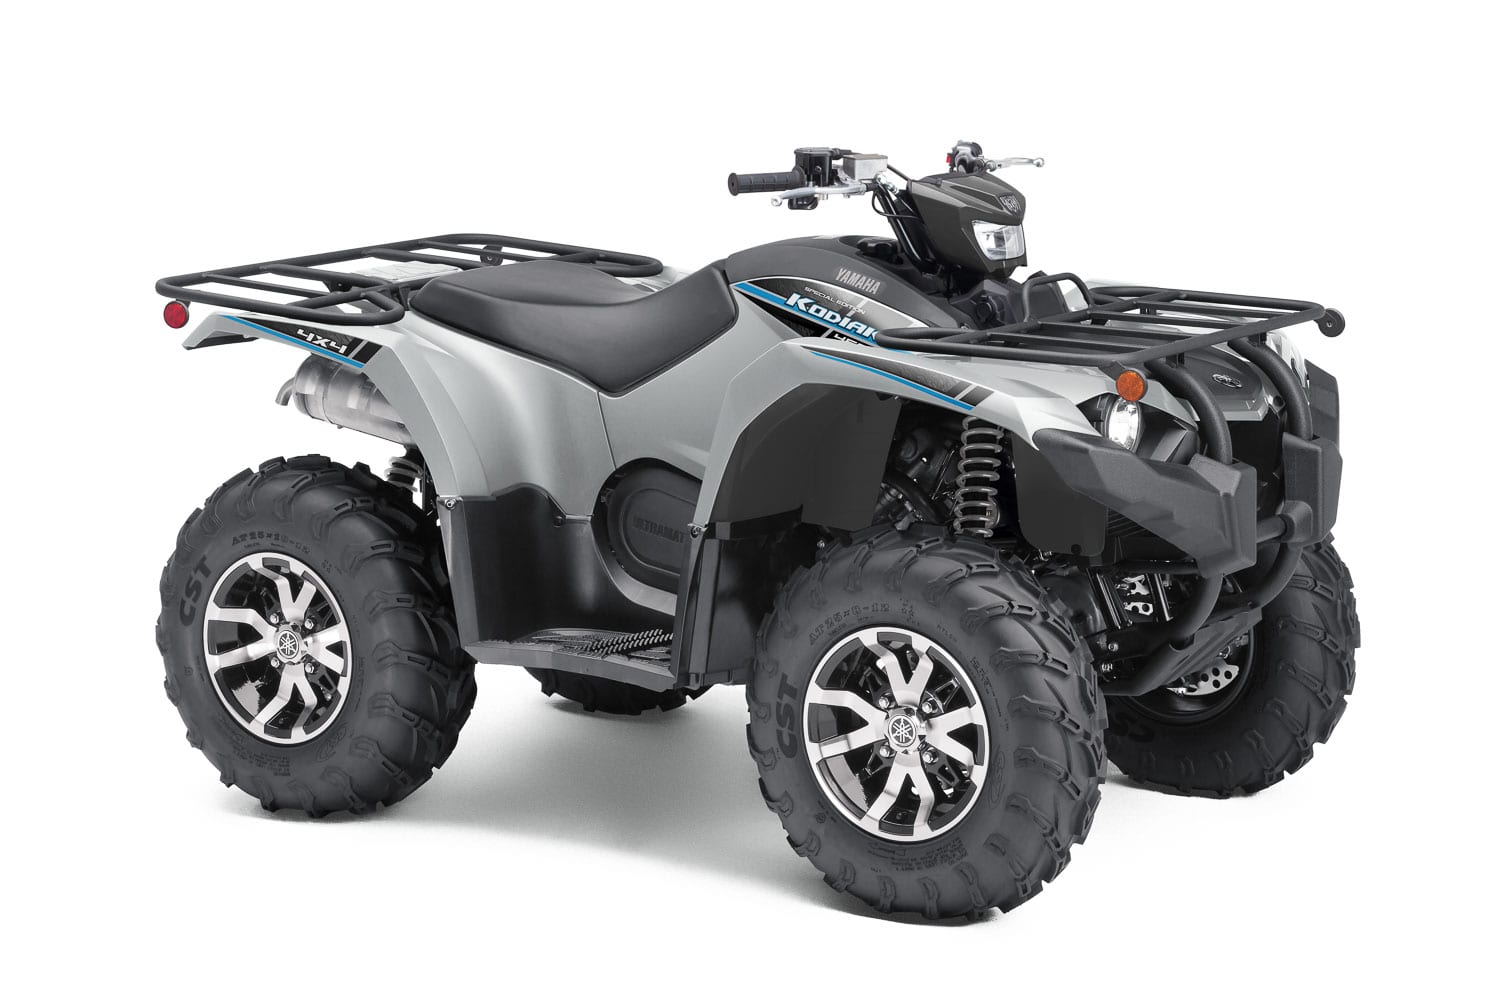 2020 Yamaha ATV Lineup